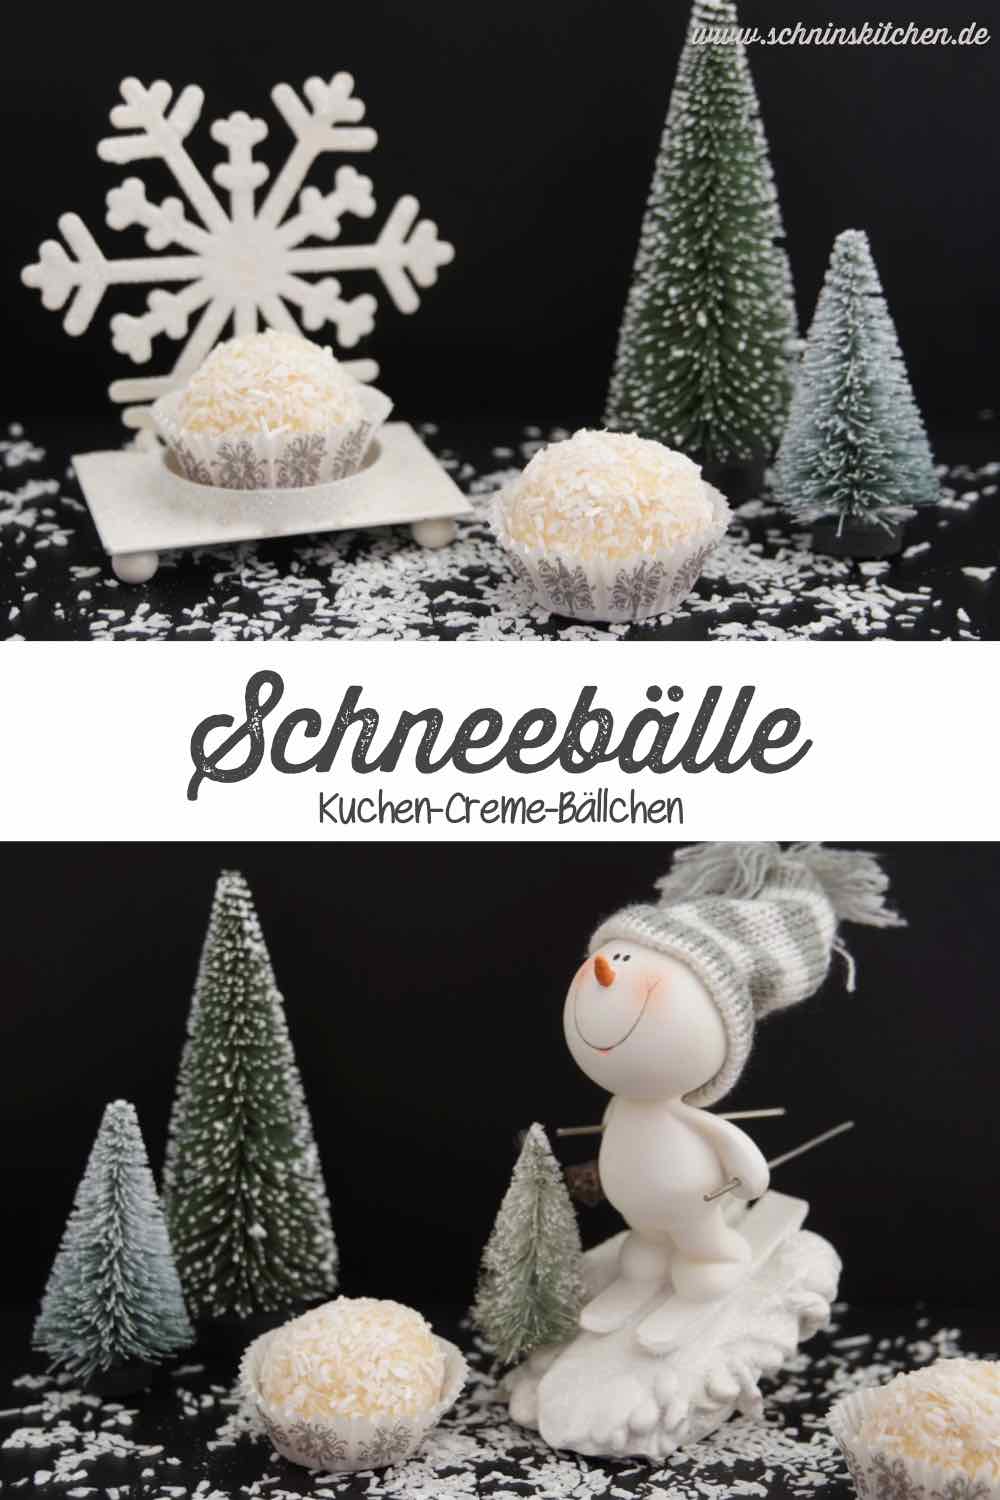 Schneebälle - leckere, kleine Kuchen-Creme-Bällchen mit Kokos und Amaretto | www.schninskitchen.de